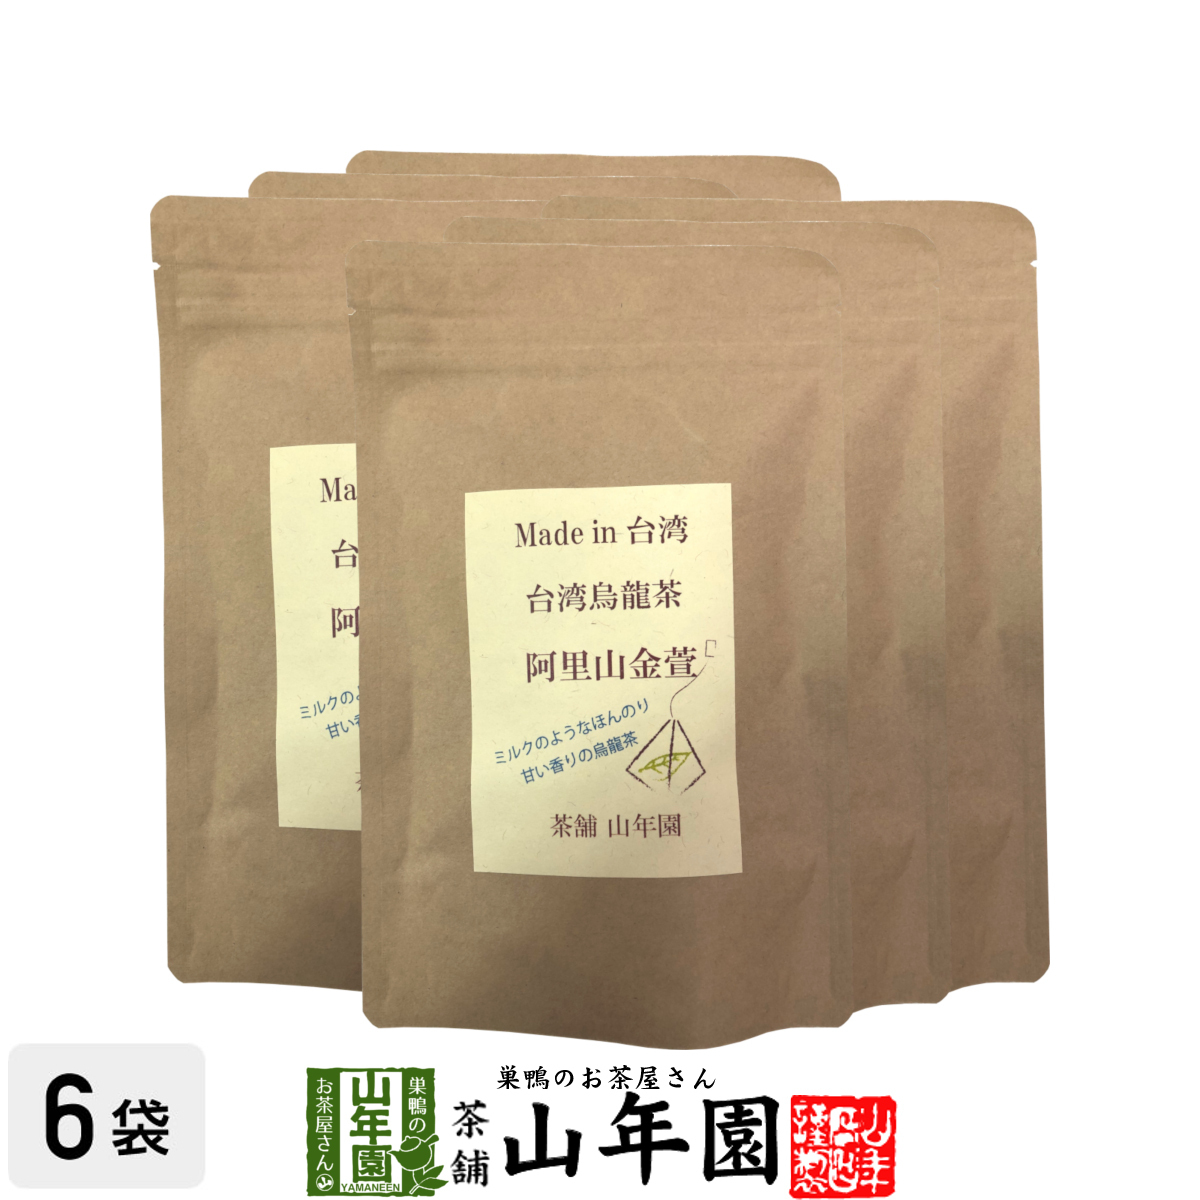 台湾烏龍茶 阿里山金萱 2g×12包×6袋セット 台湾の阿里山で収穫された茶葉を使った烏龍茶 ほのかにミルクのような香り